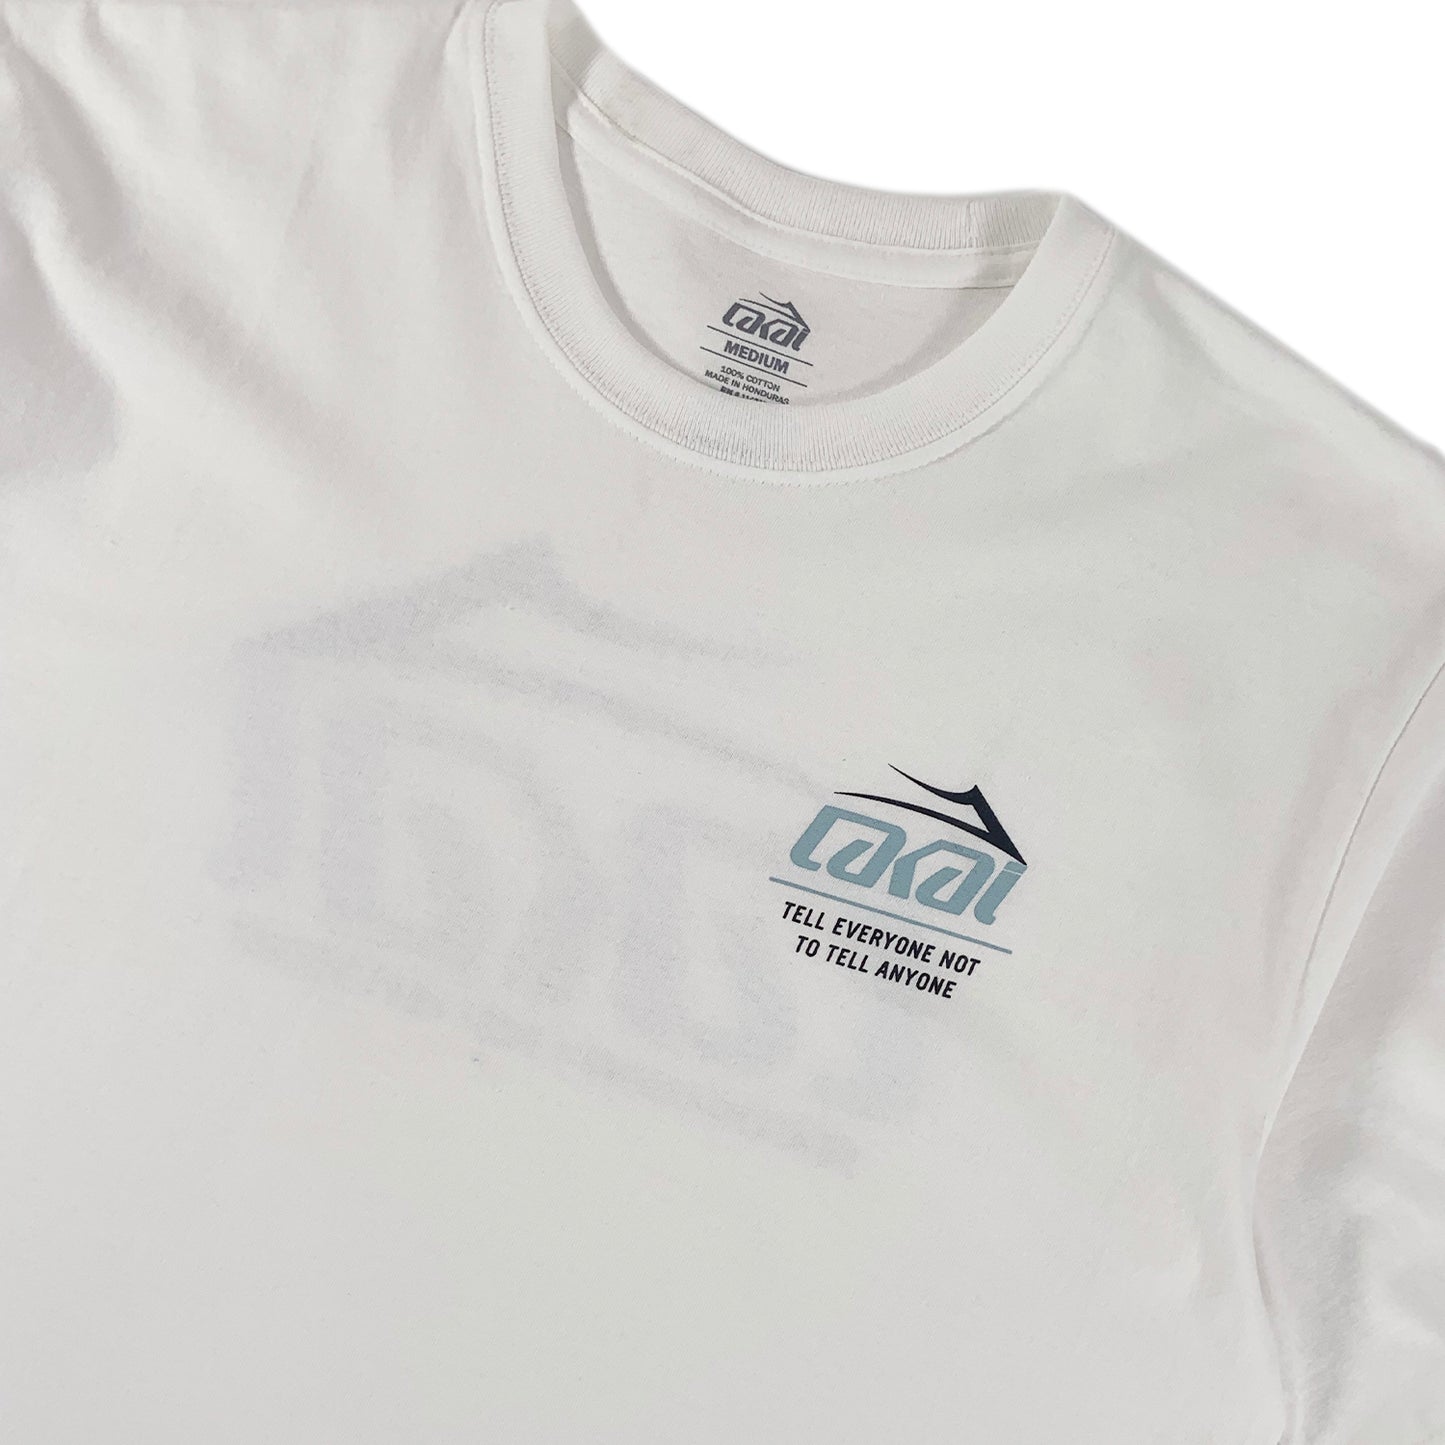 Lakai - Secret - T-Shirt - White - Prime Delux Store